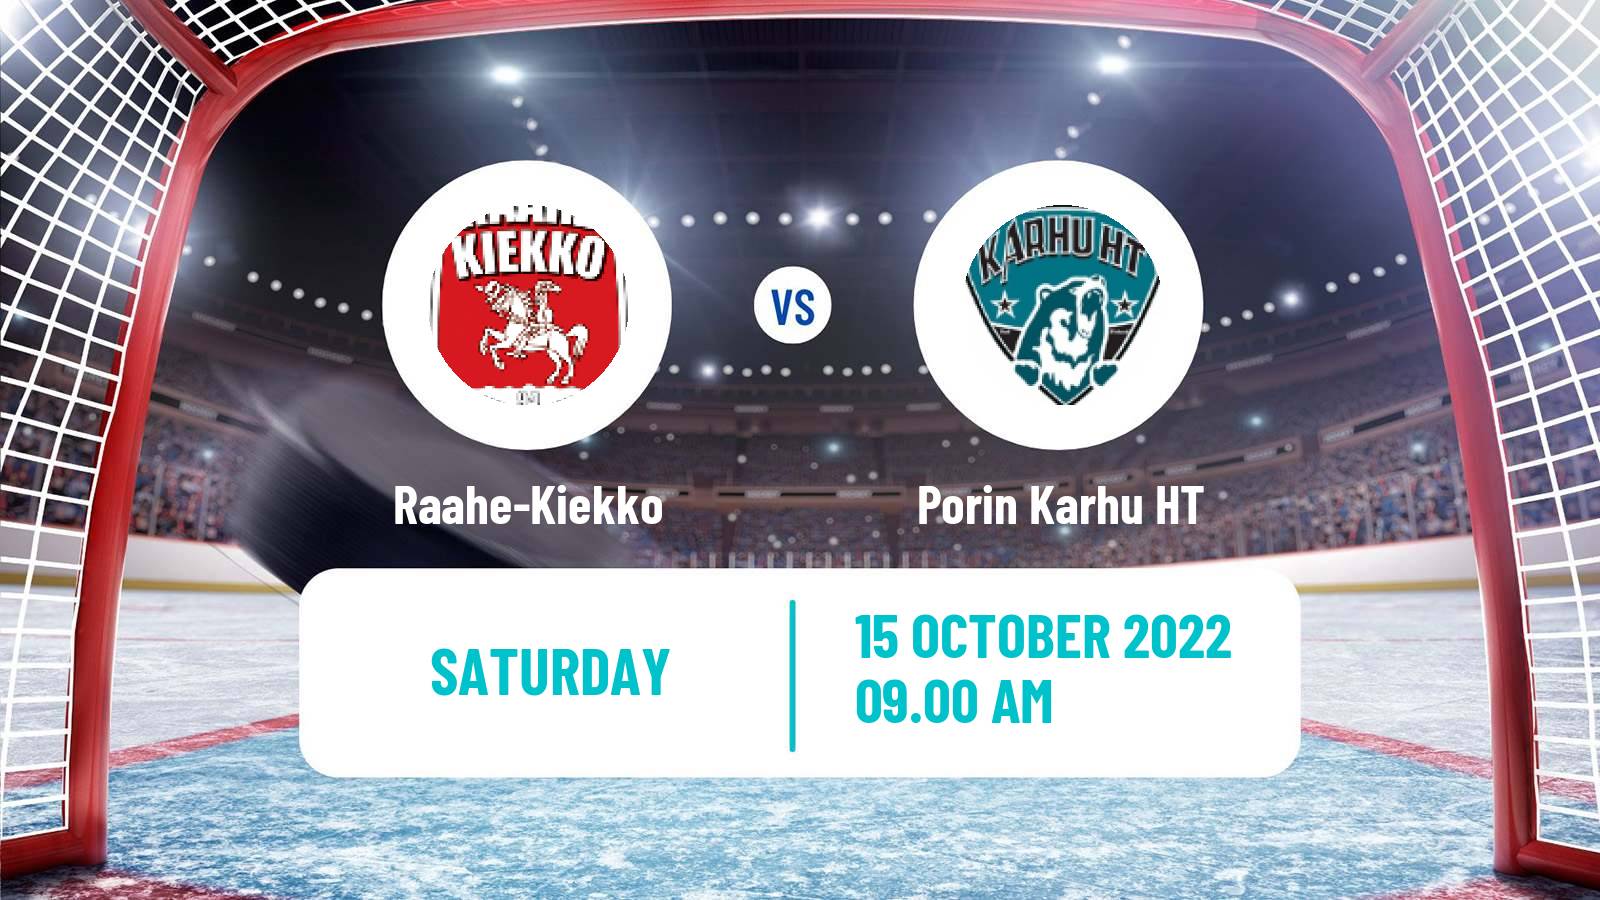 Hockey Finnish Suomi-sarja Raahe-Kiekko - Porin Karhu HT